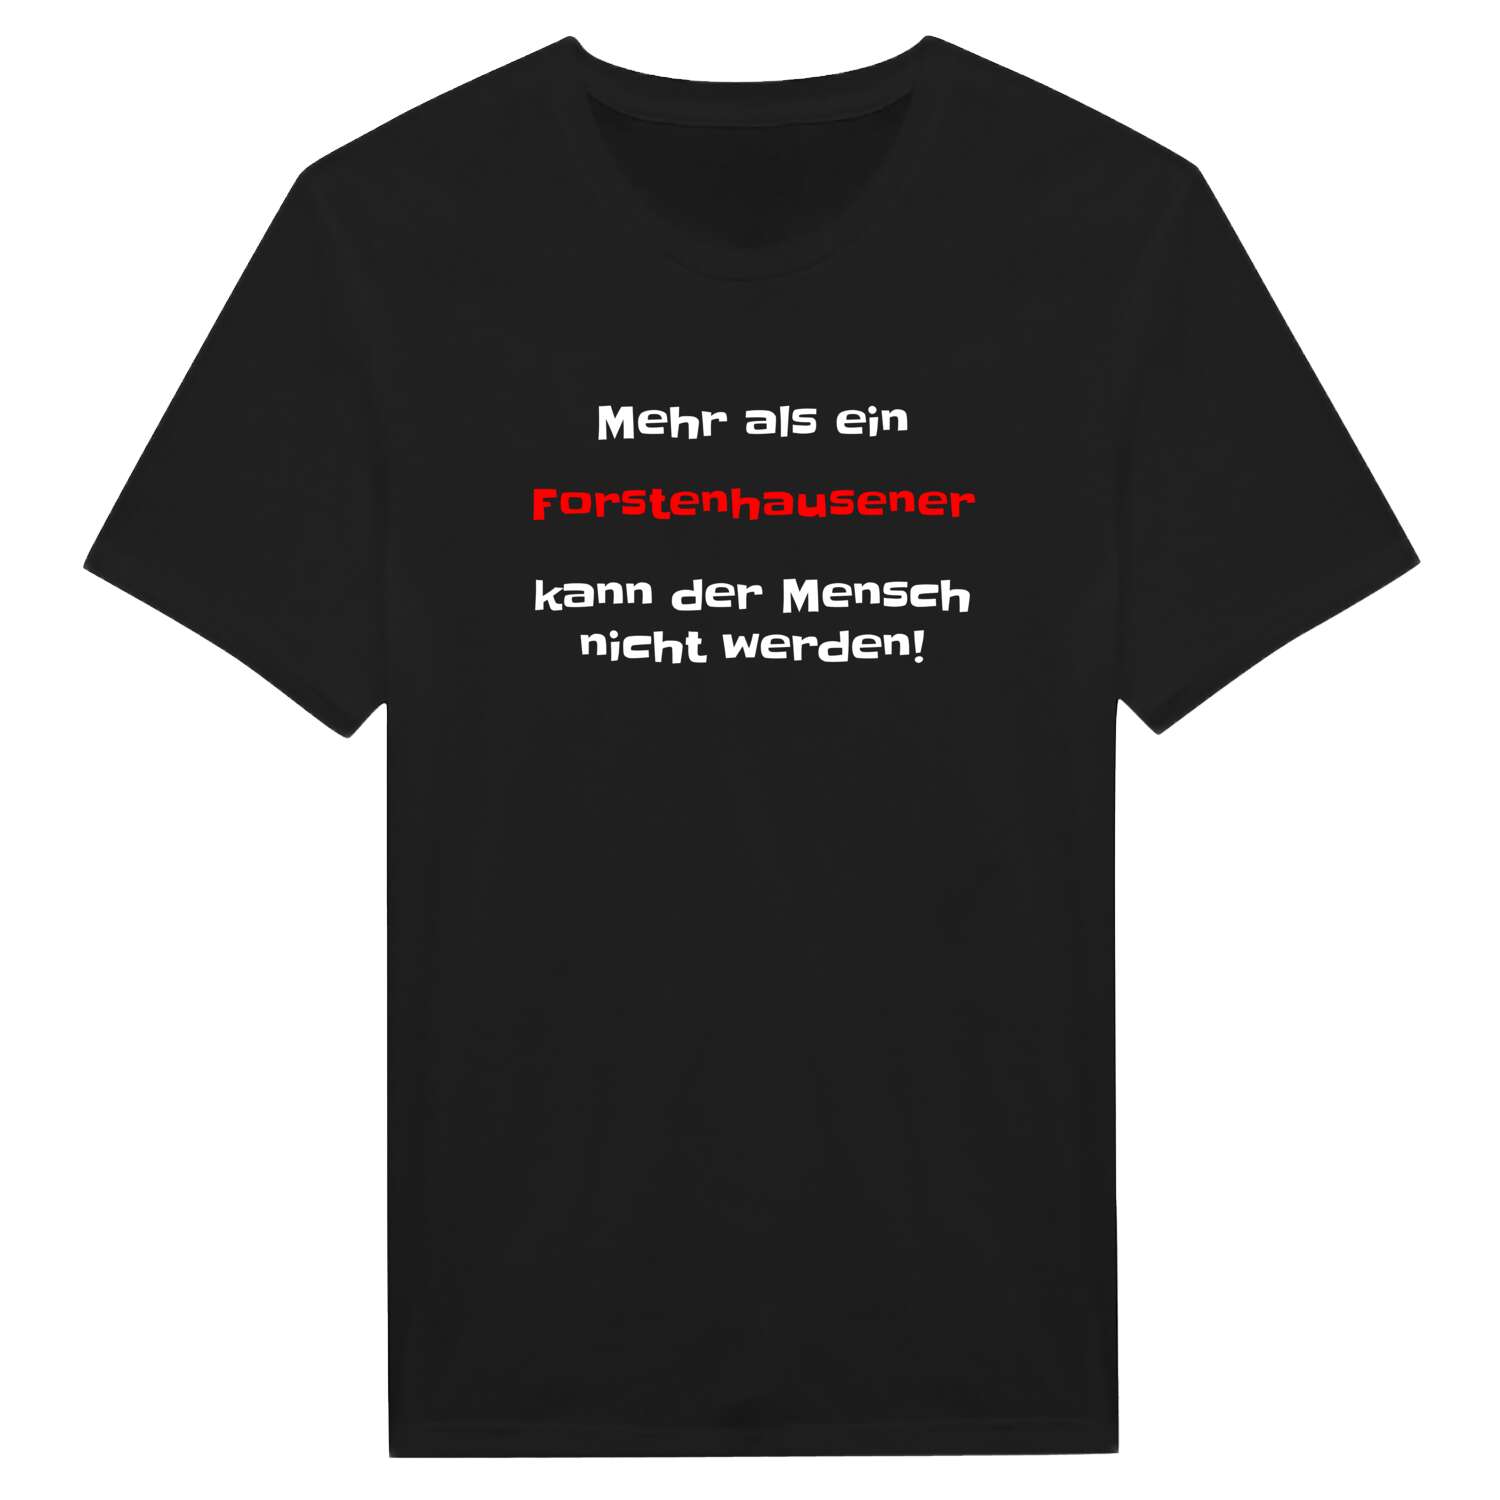 Forstenhausen T-Shirt »Mehr als ein«